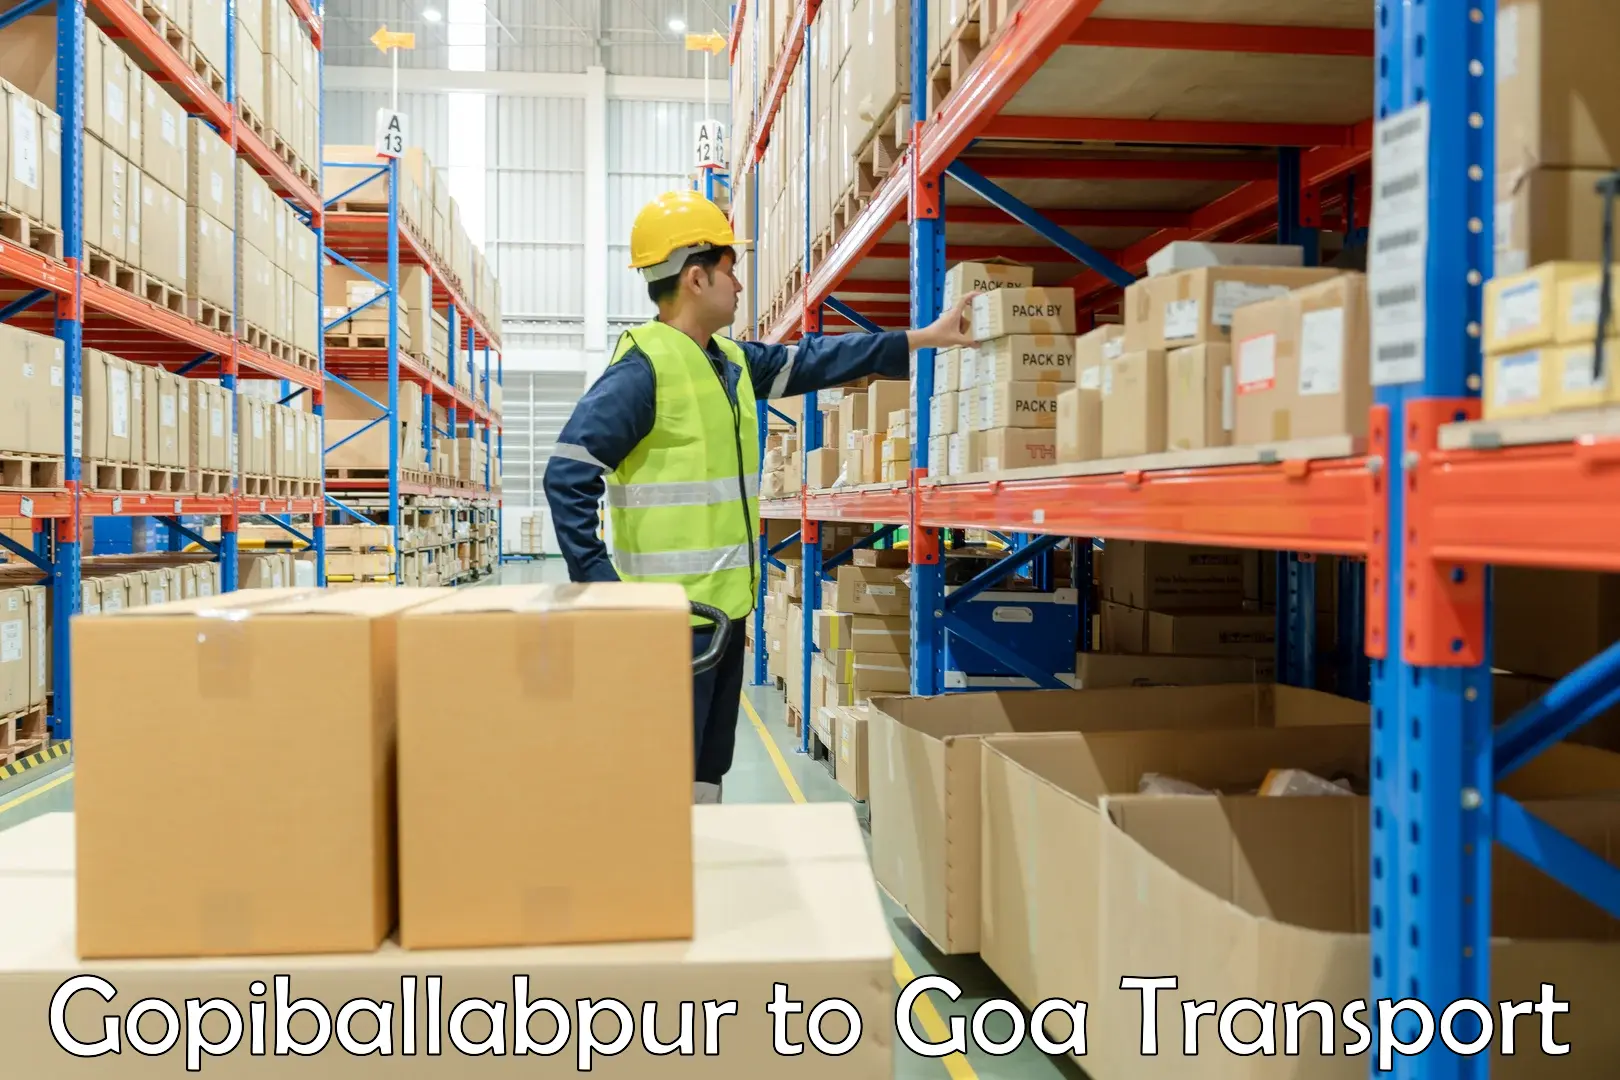 Shipping partner Gopiballabpur to Goa